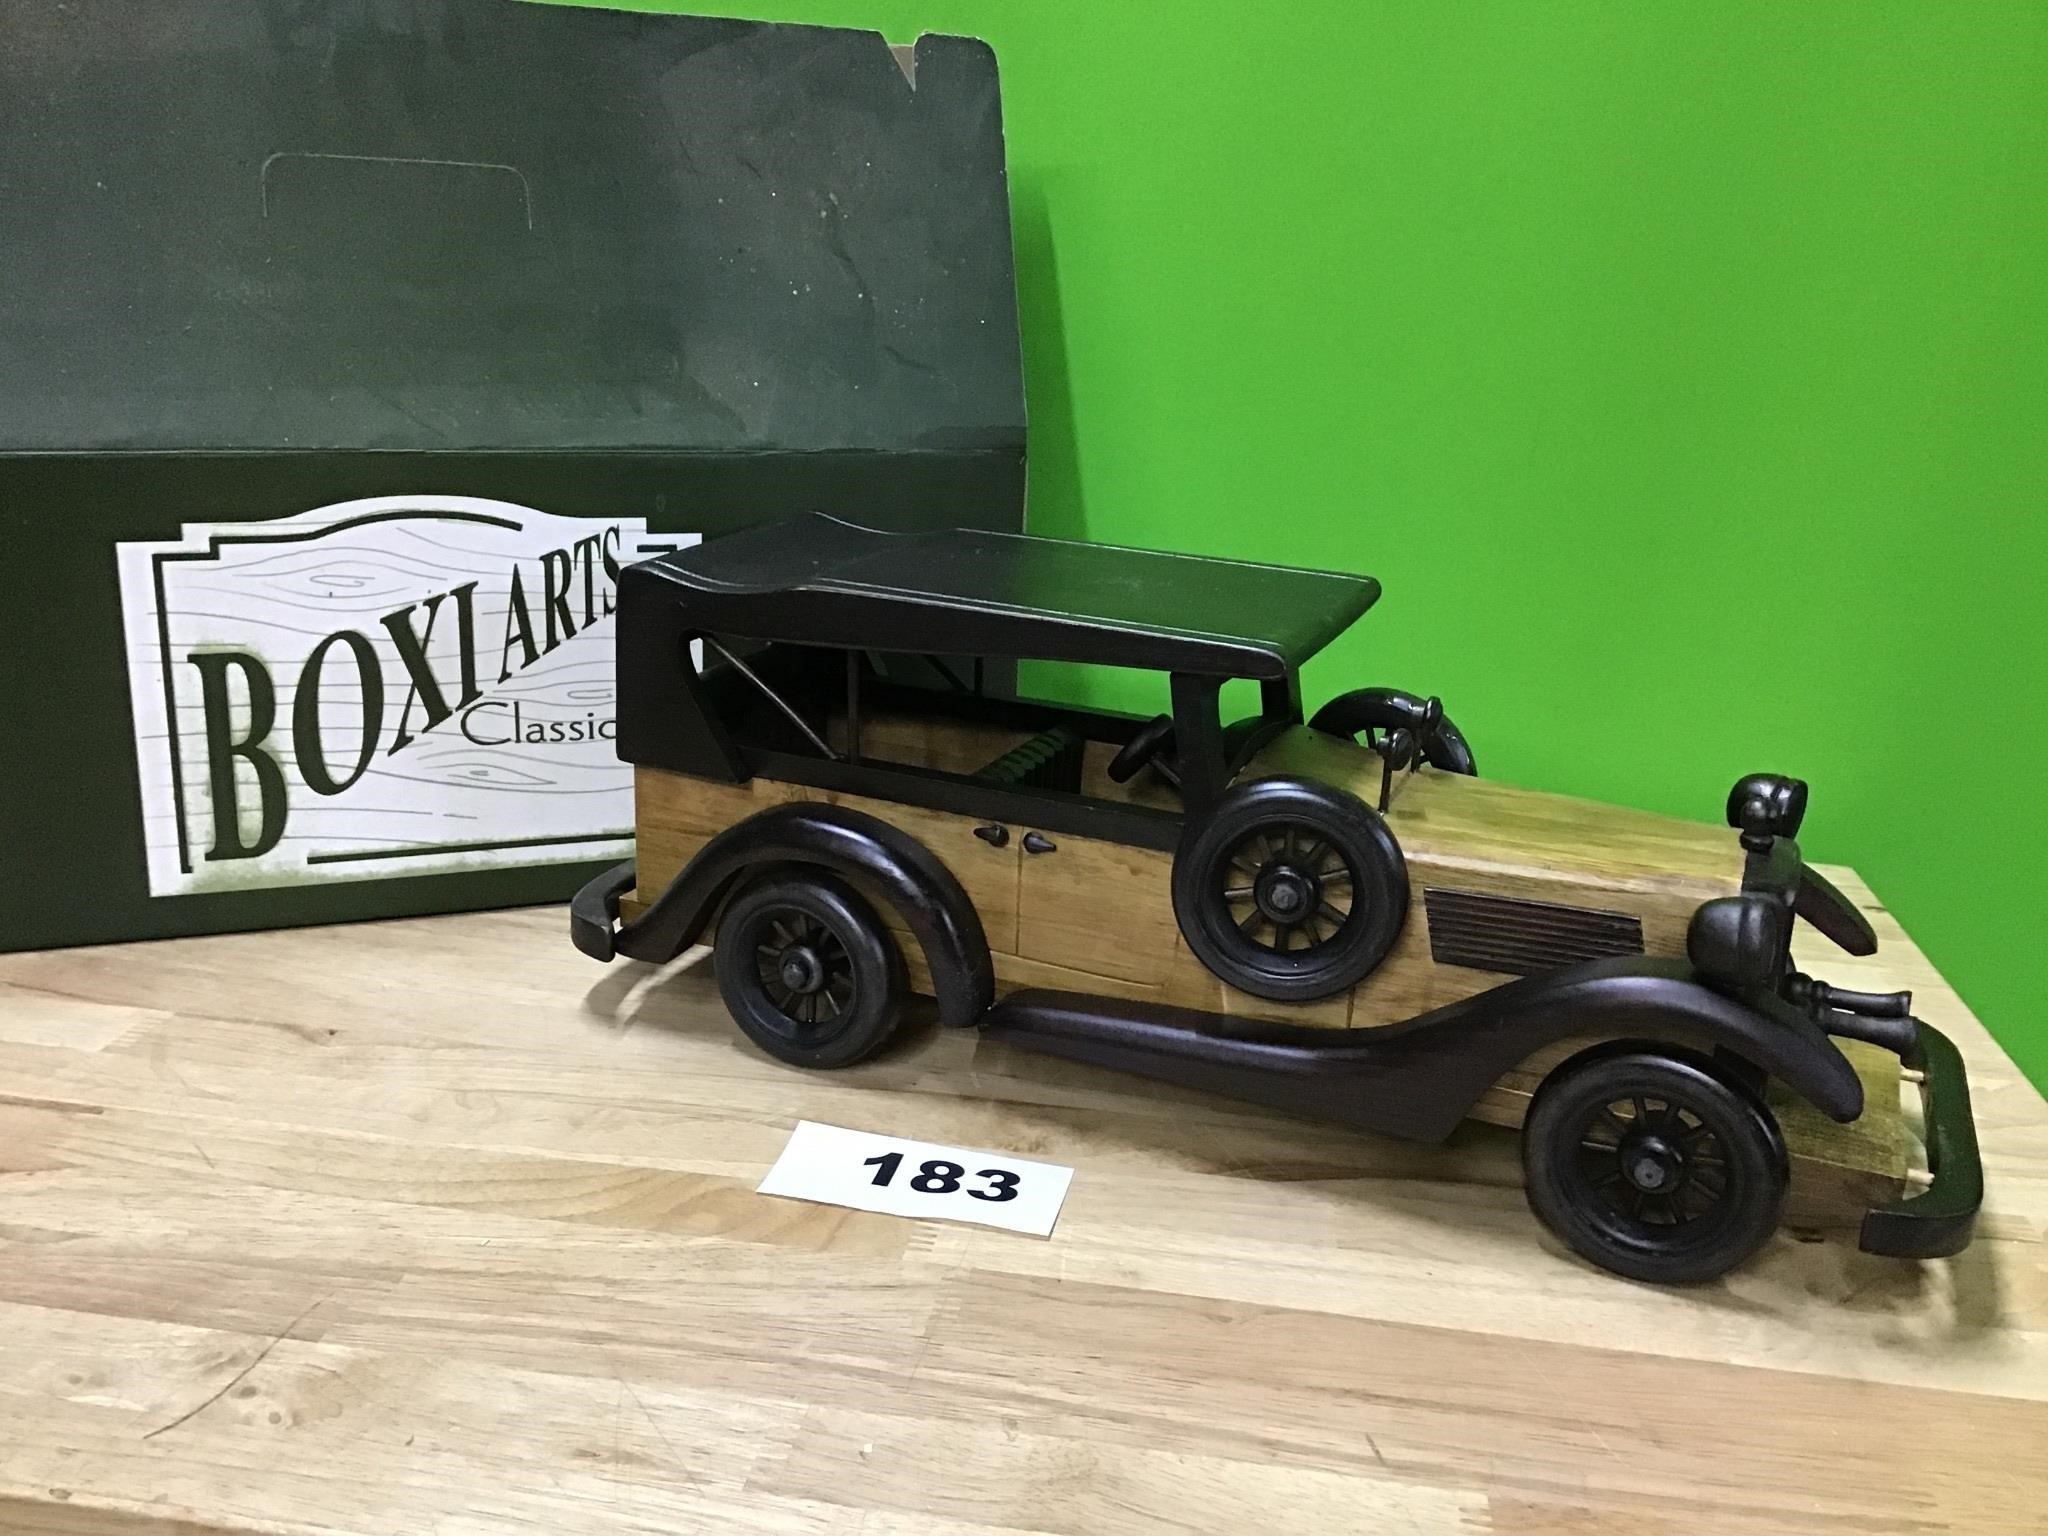 BoxiArts Classics Wooden Car